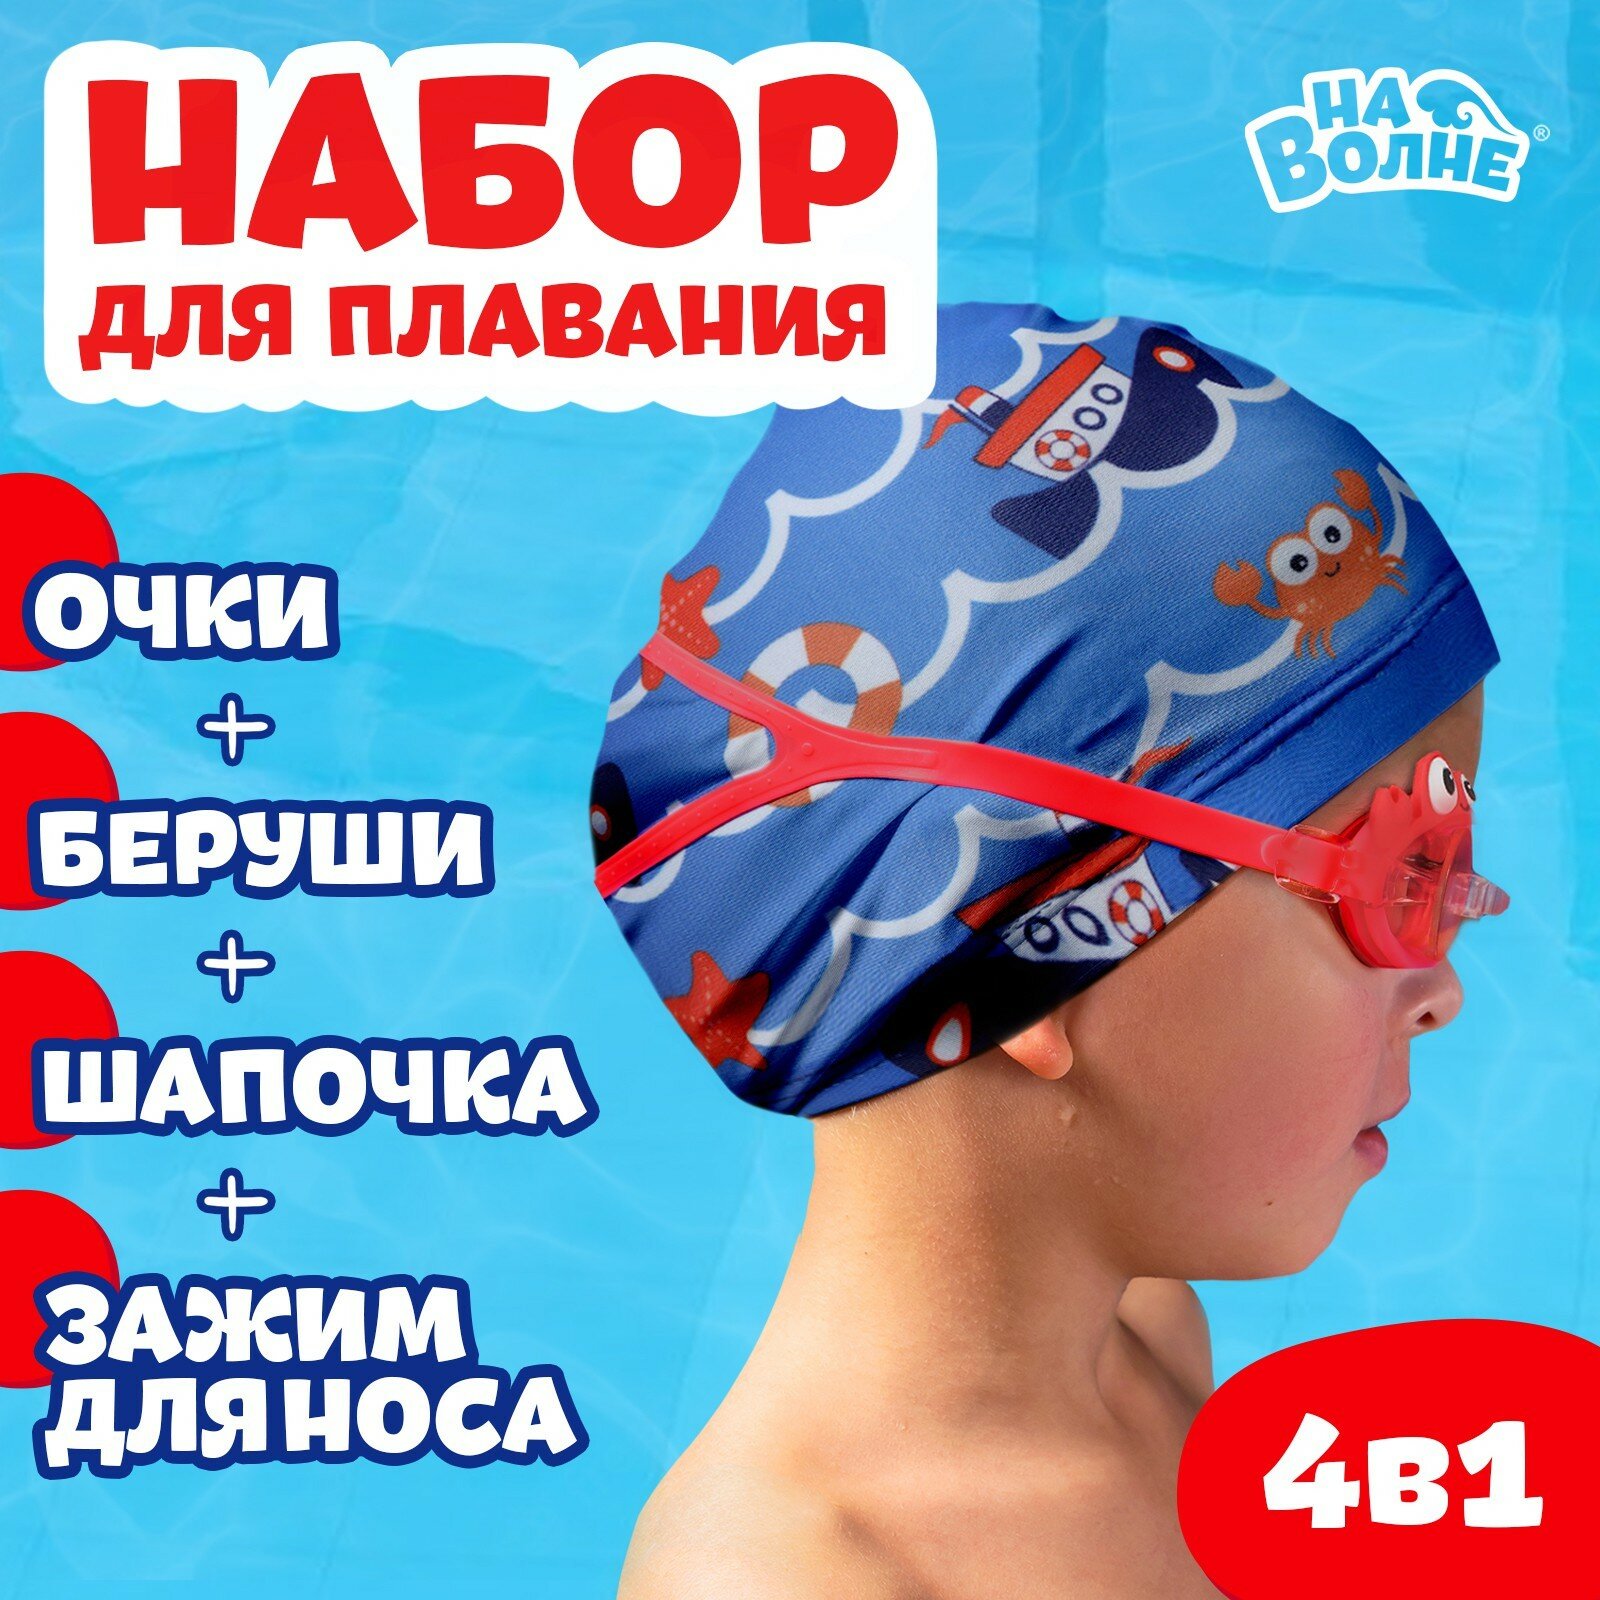 Набор для плавания детский «Морское приключение»: шапочка, очки, беруши, зажим для носа